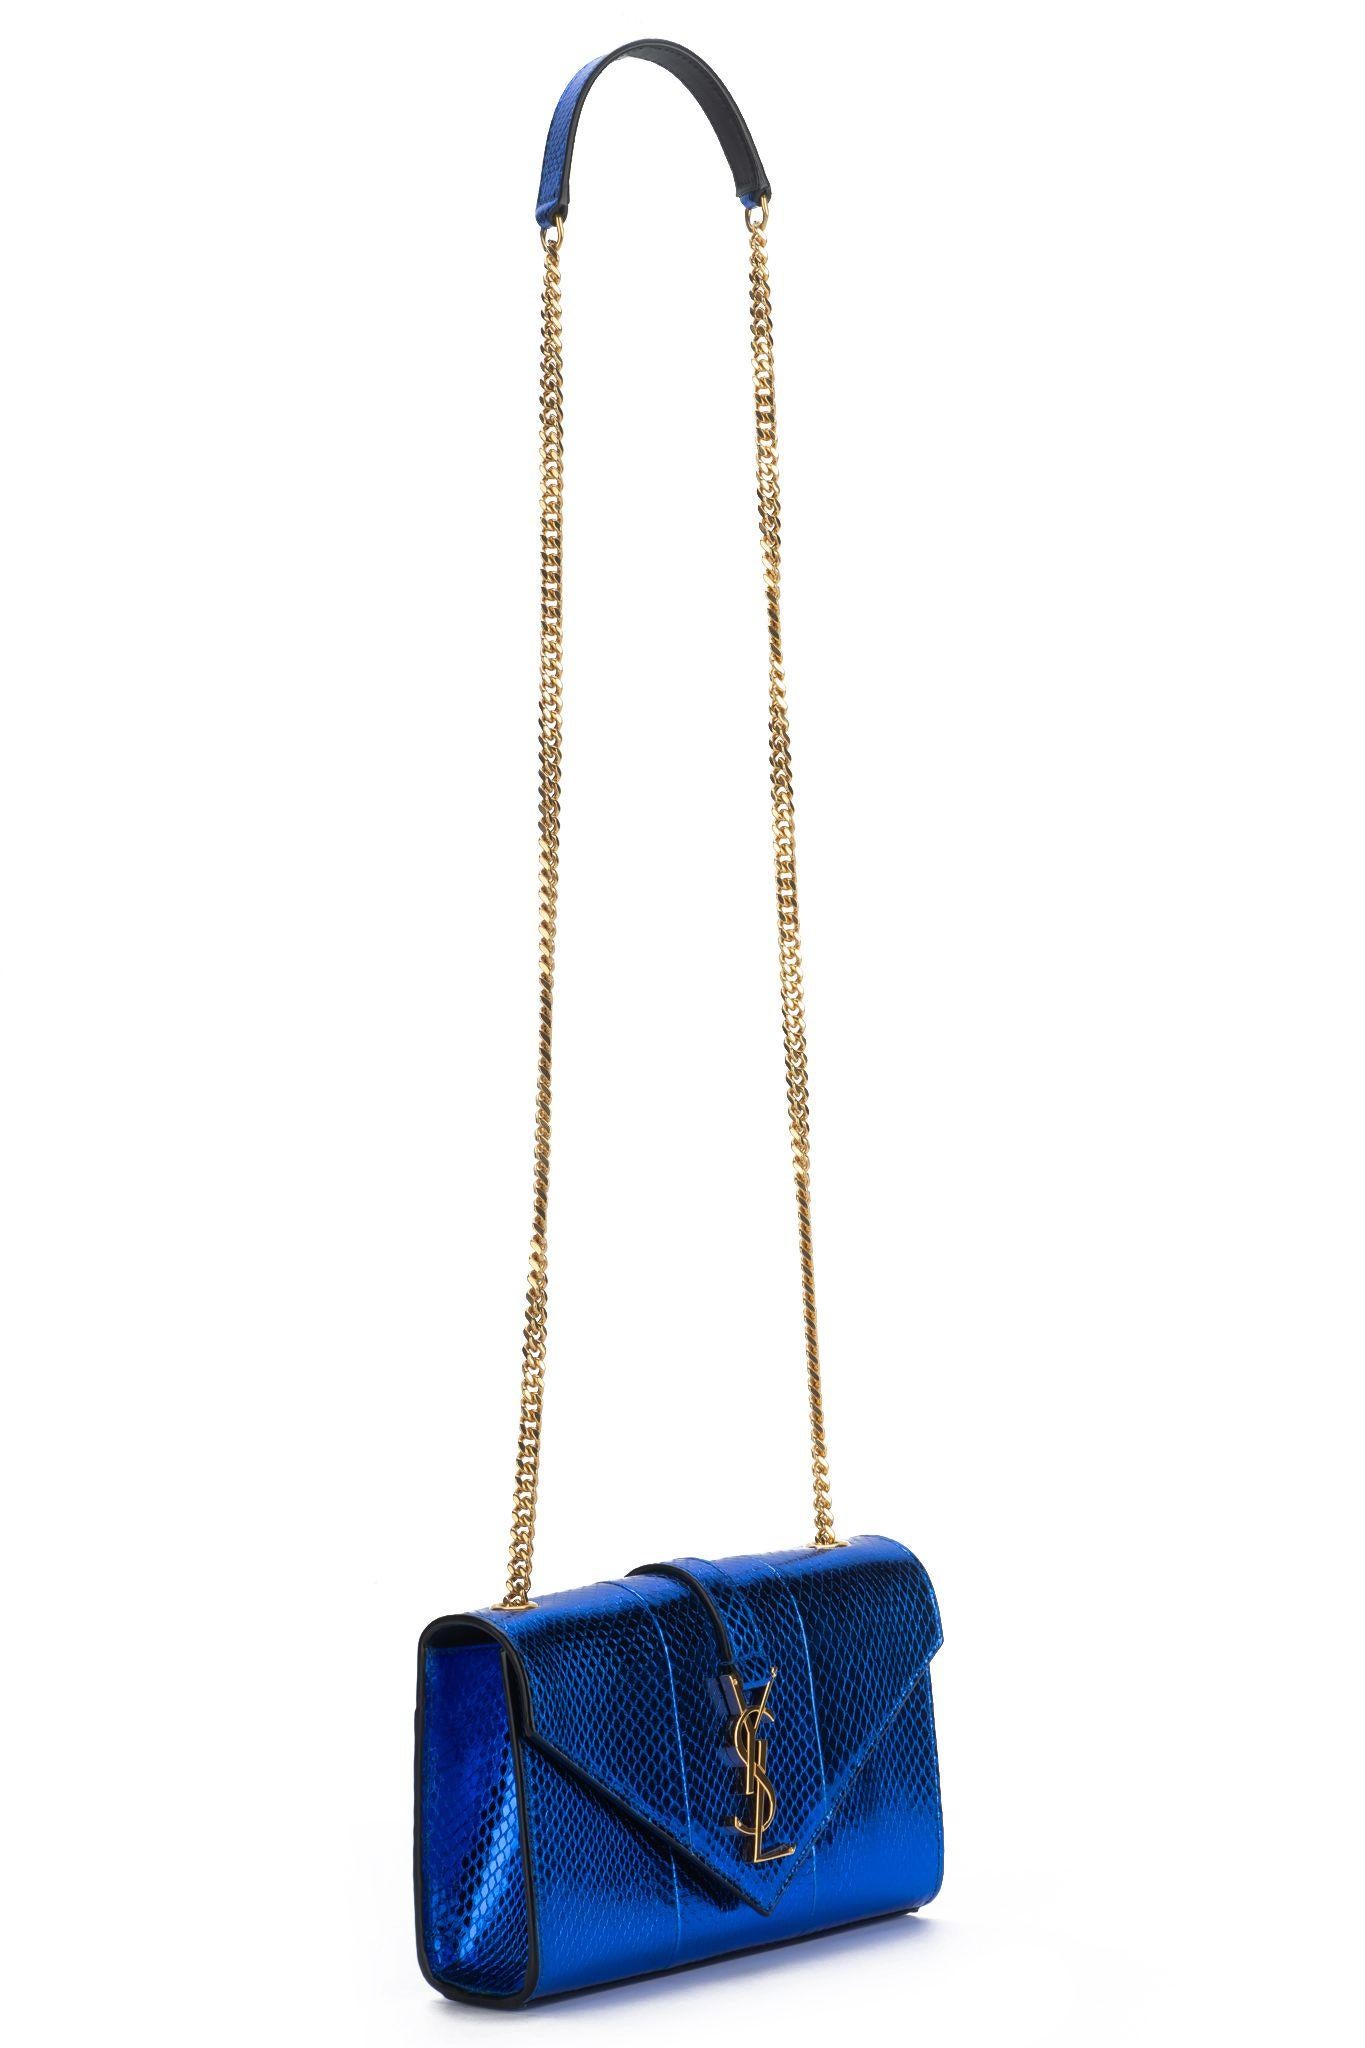 Yves Saint Laurent brandneue elektrisch blaue Python sollte Tasche mit Gold Hardware. Kann quer zum Körper getragen werden. Schulterhöhe 22